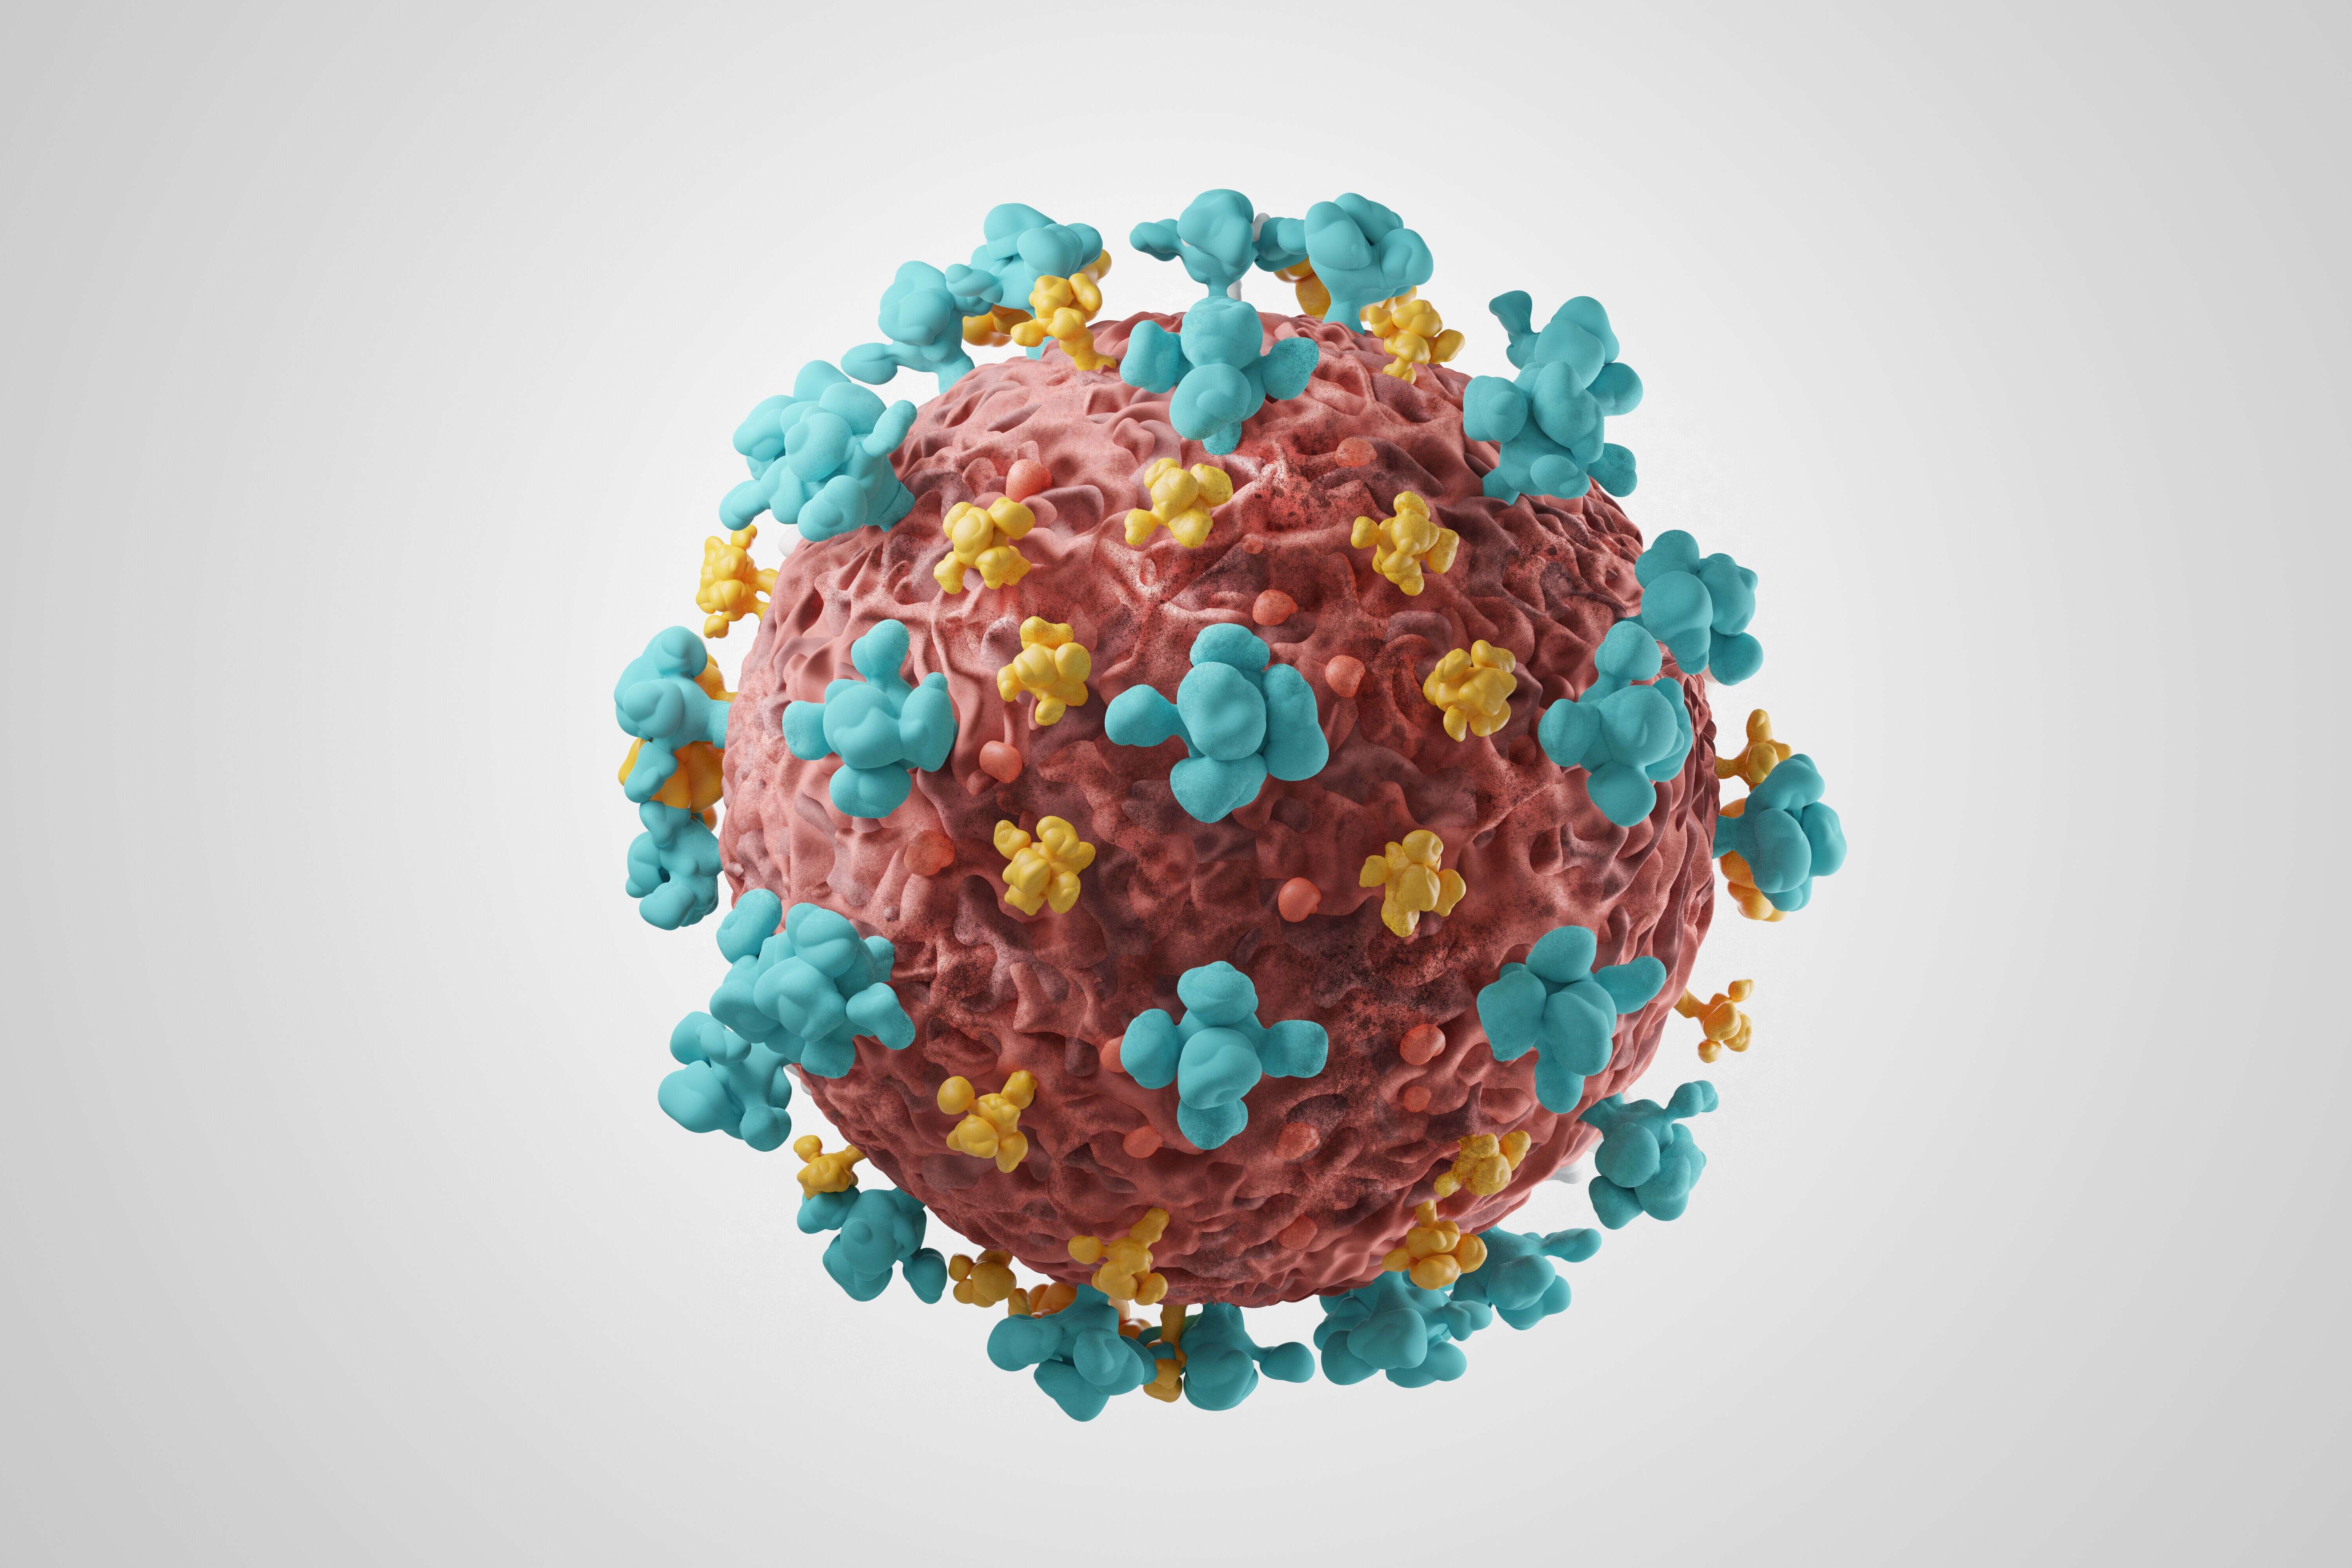 Une nouvelle souche du coronavirus disposant de diverses mutations inquiète les autorités. La communauté scientifique étudie la possibilité d'une transmission augmentée.